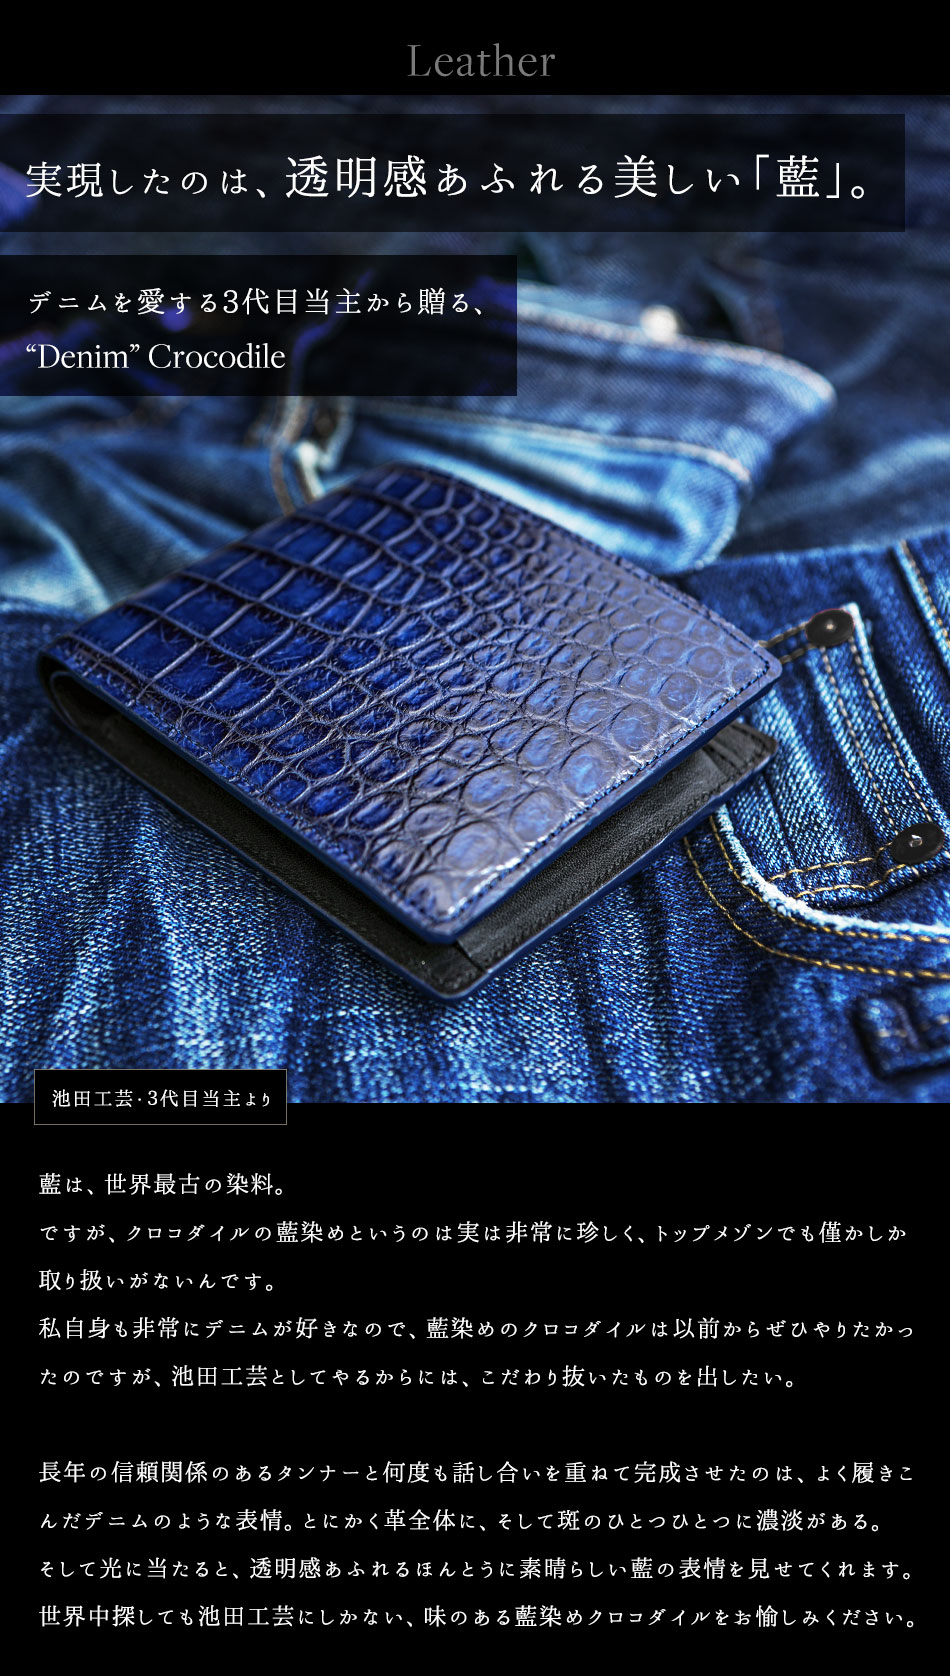 『池田工芸 藍染スモールクロコダイルレザー・二つ折り財布』の商品画像01 -